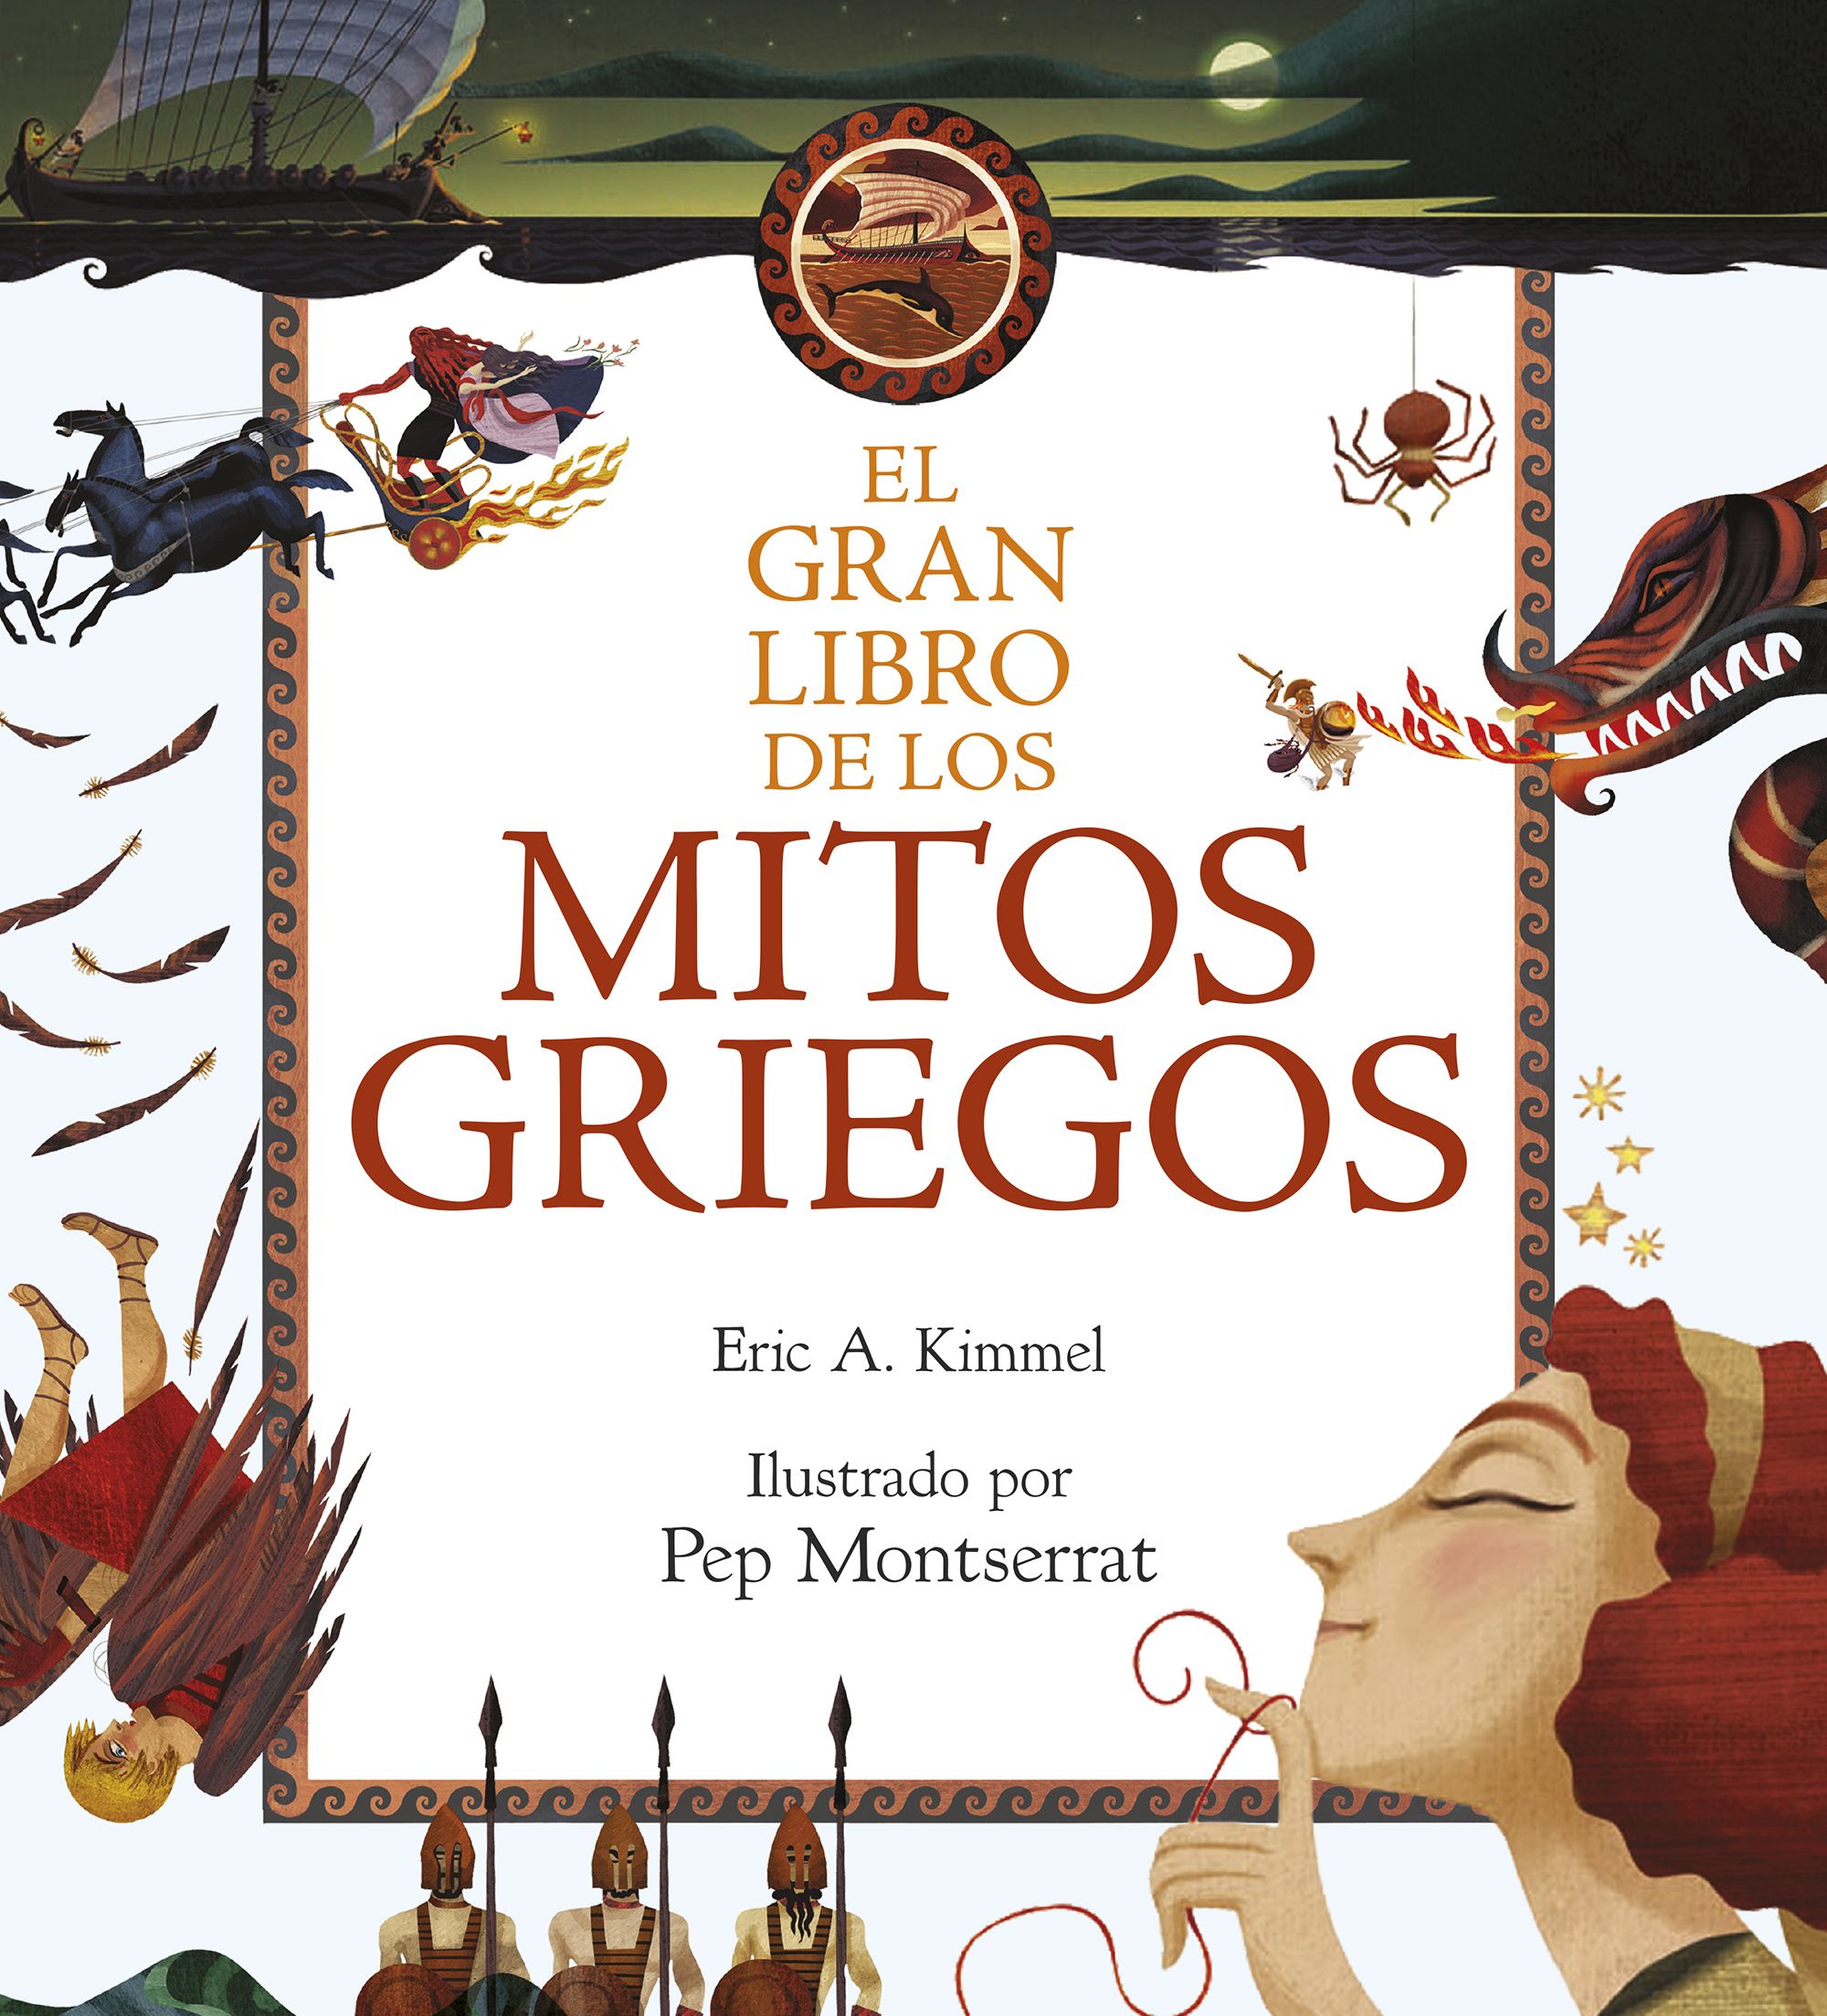 El gran libro de los mitos griegos